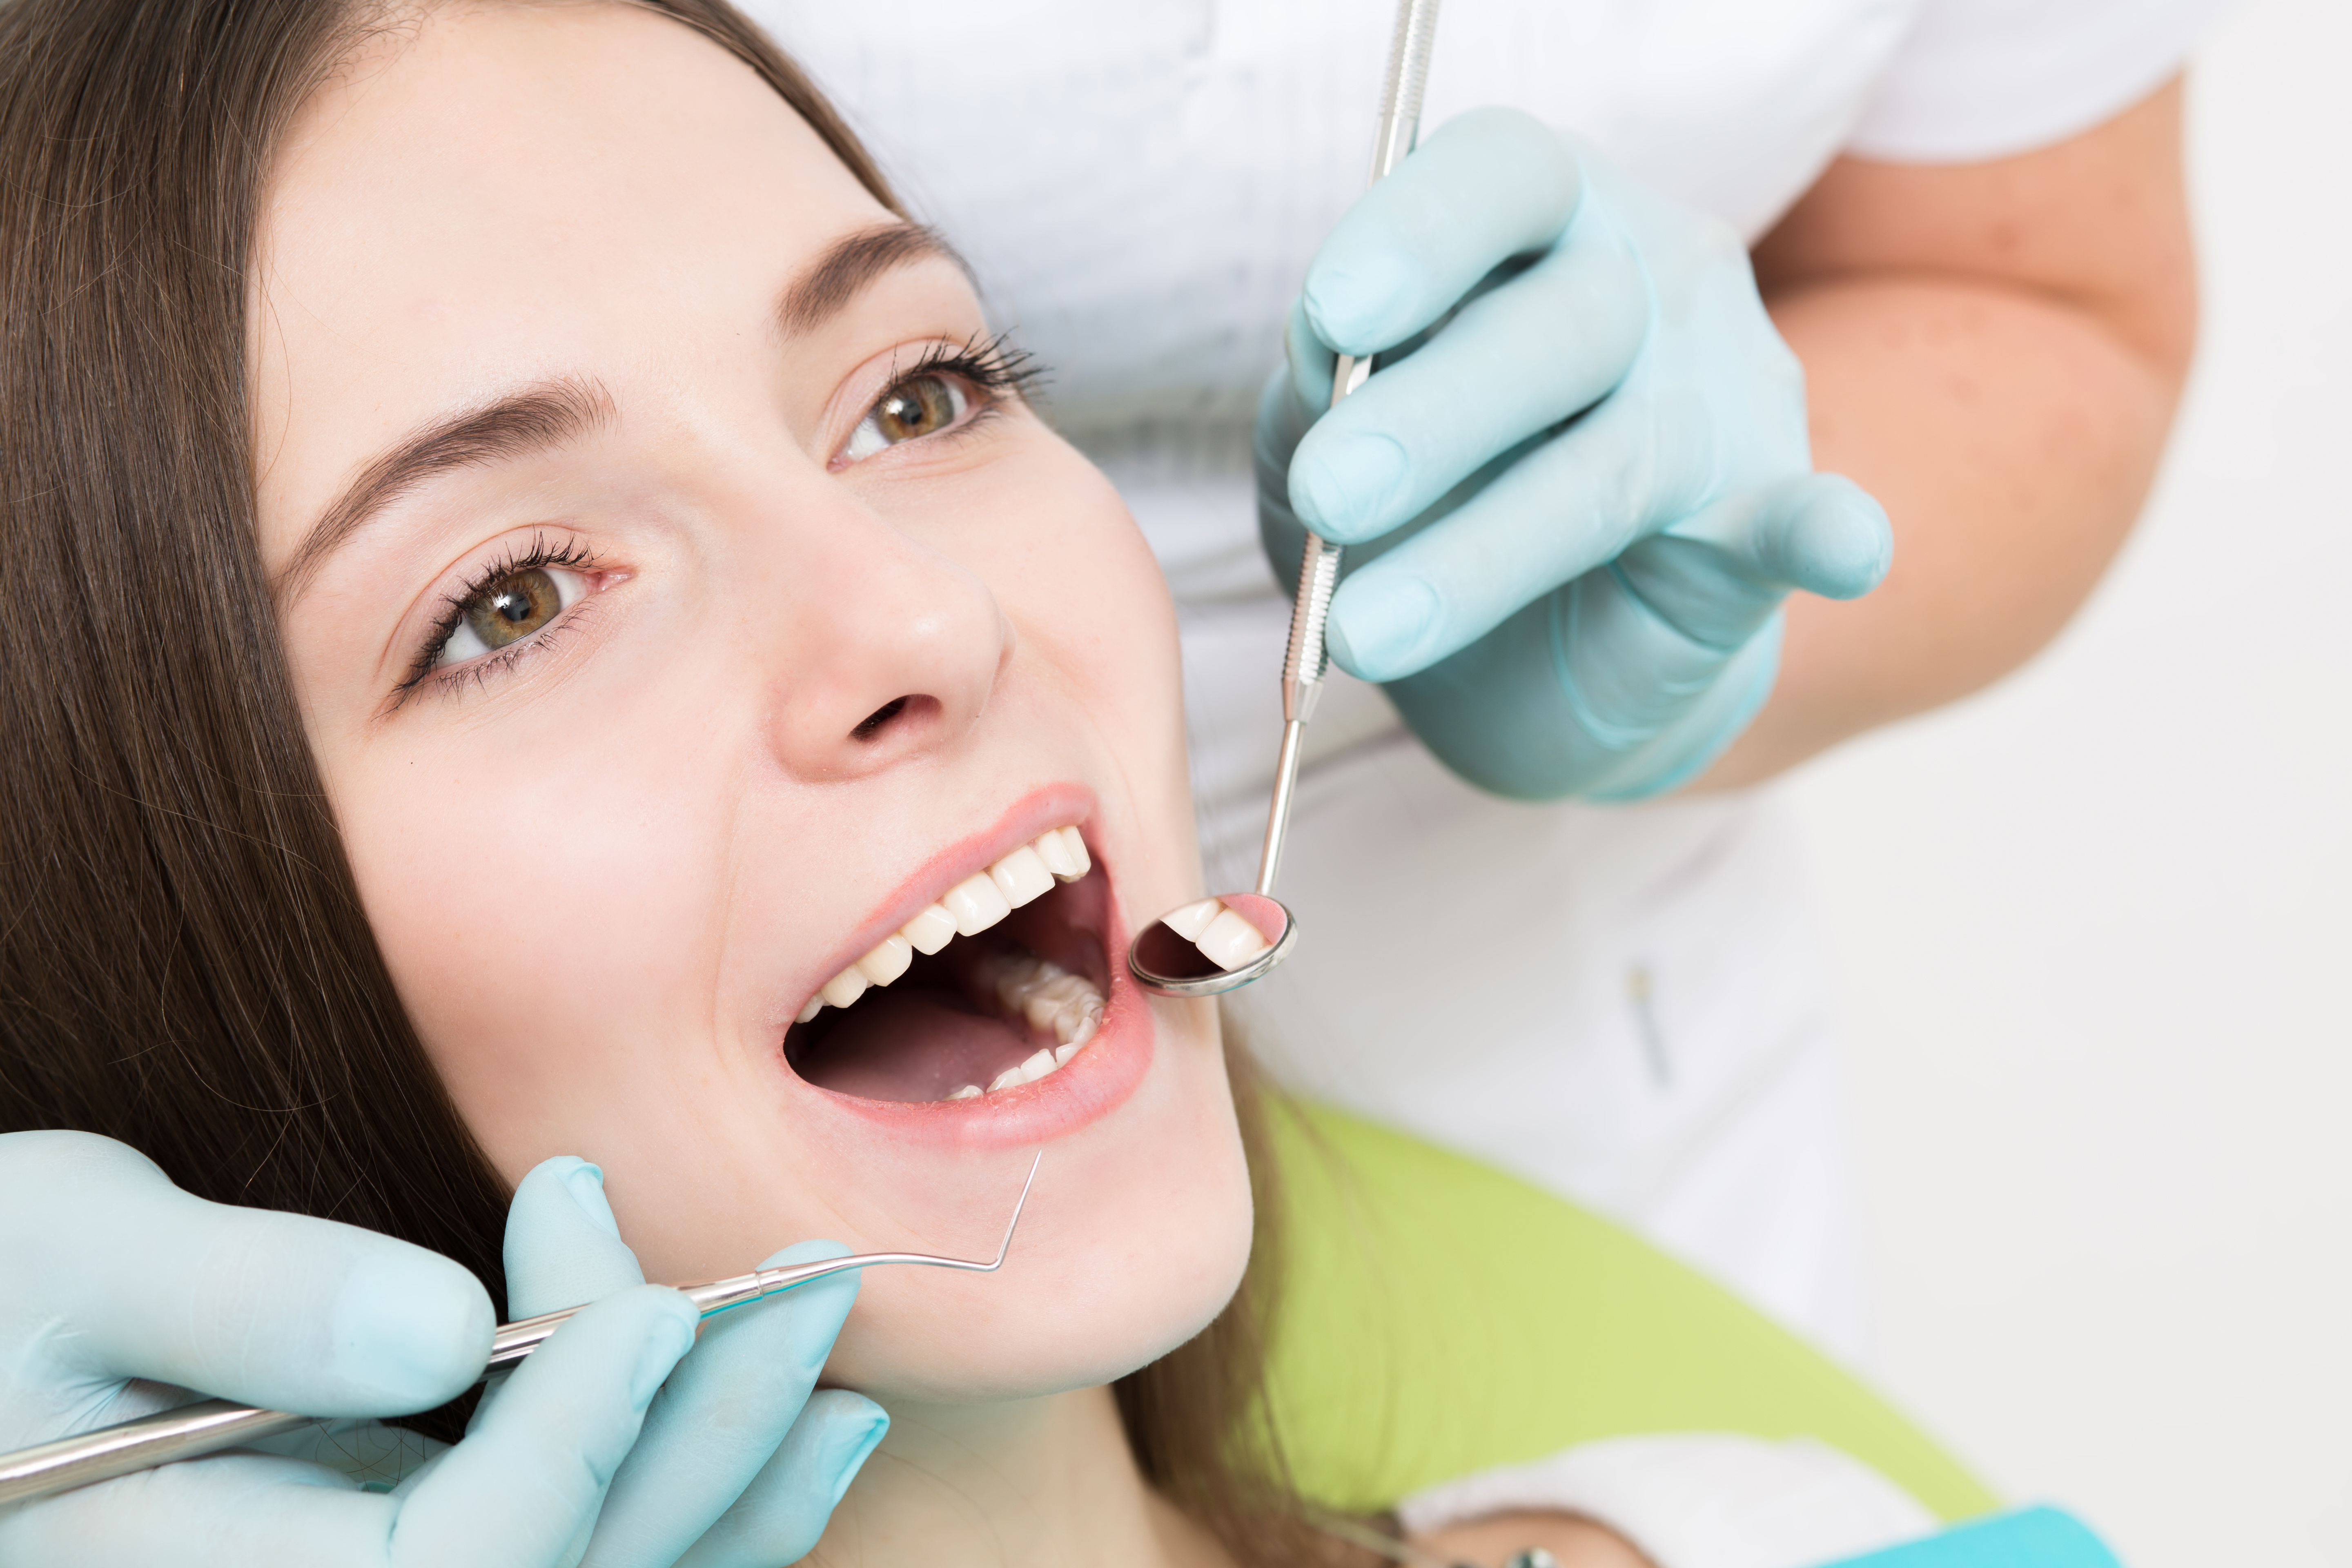 Профессиональная чистка зубов у стоматолога. Профессиональная гигиена полости. Профессиональная гигиена полости рта и зубов. Гигиена полости рта в стоматологии.